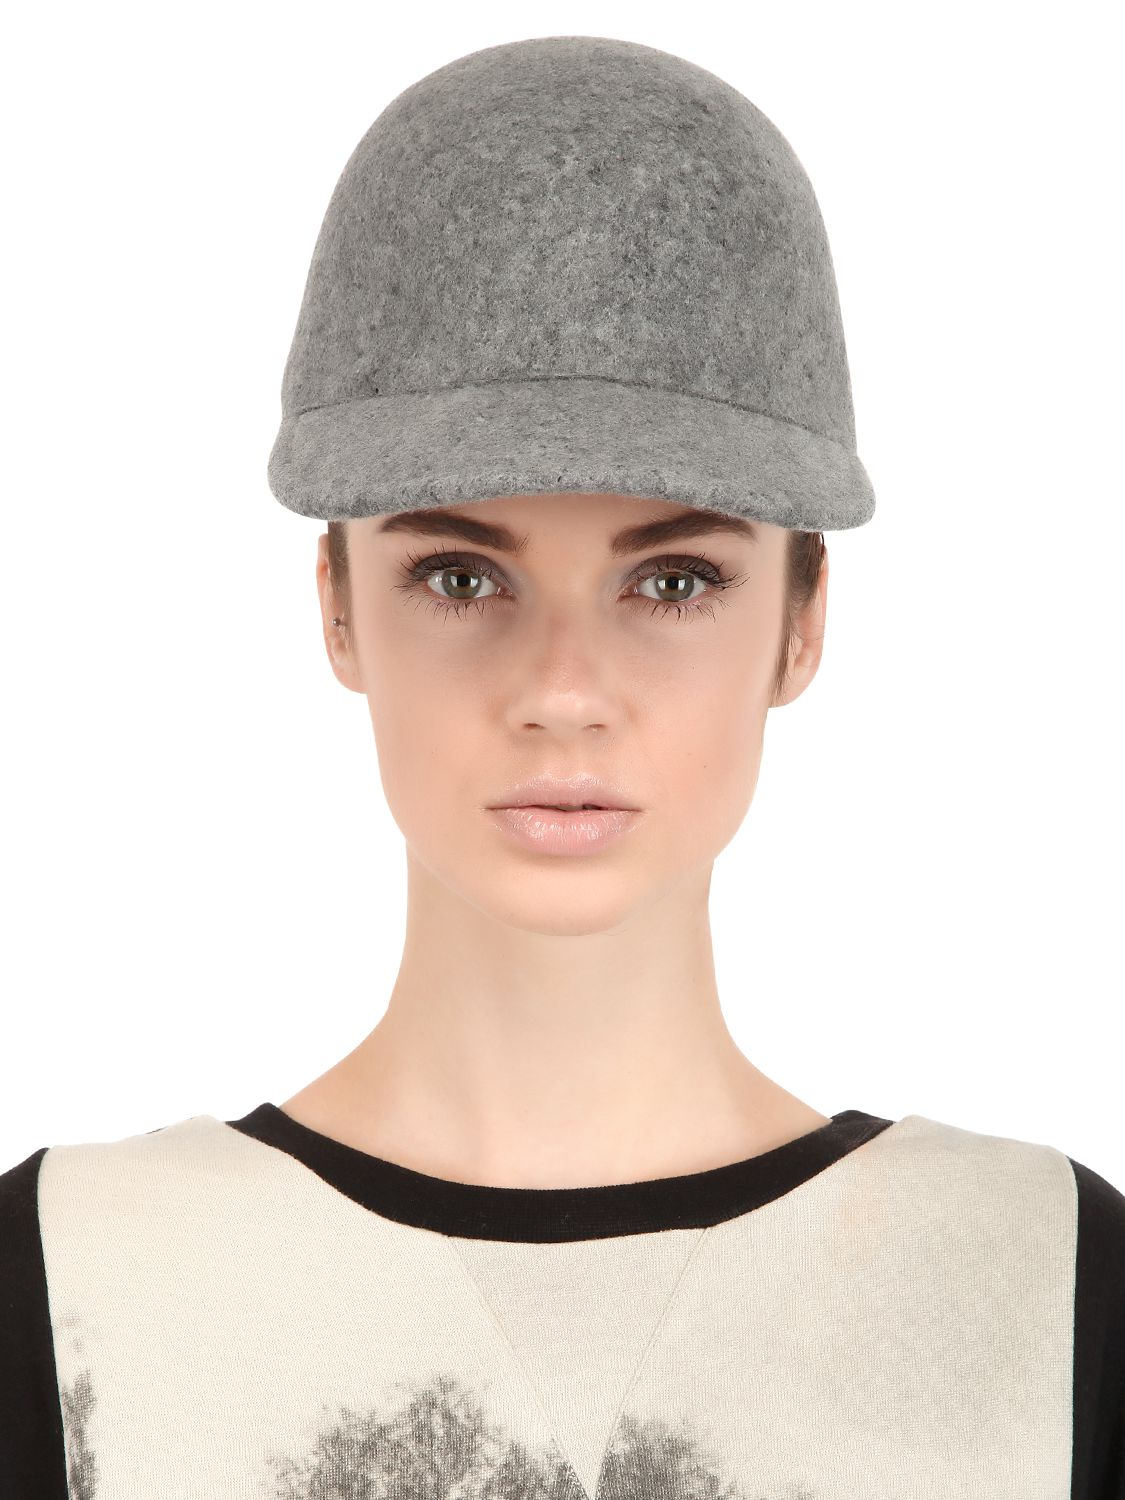 Stella McCartney Wool Felt Baseball Hat in Grey (Gray) - Lyst